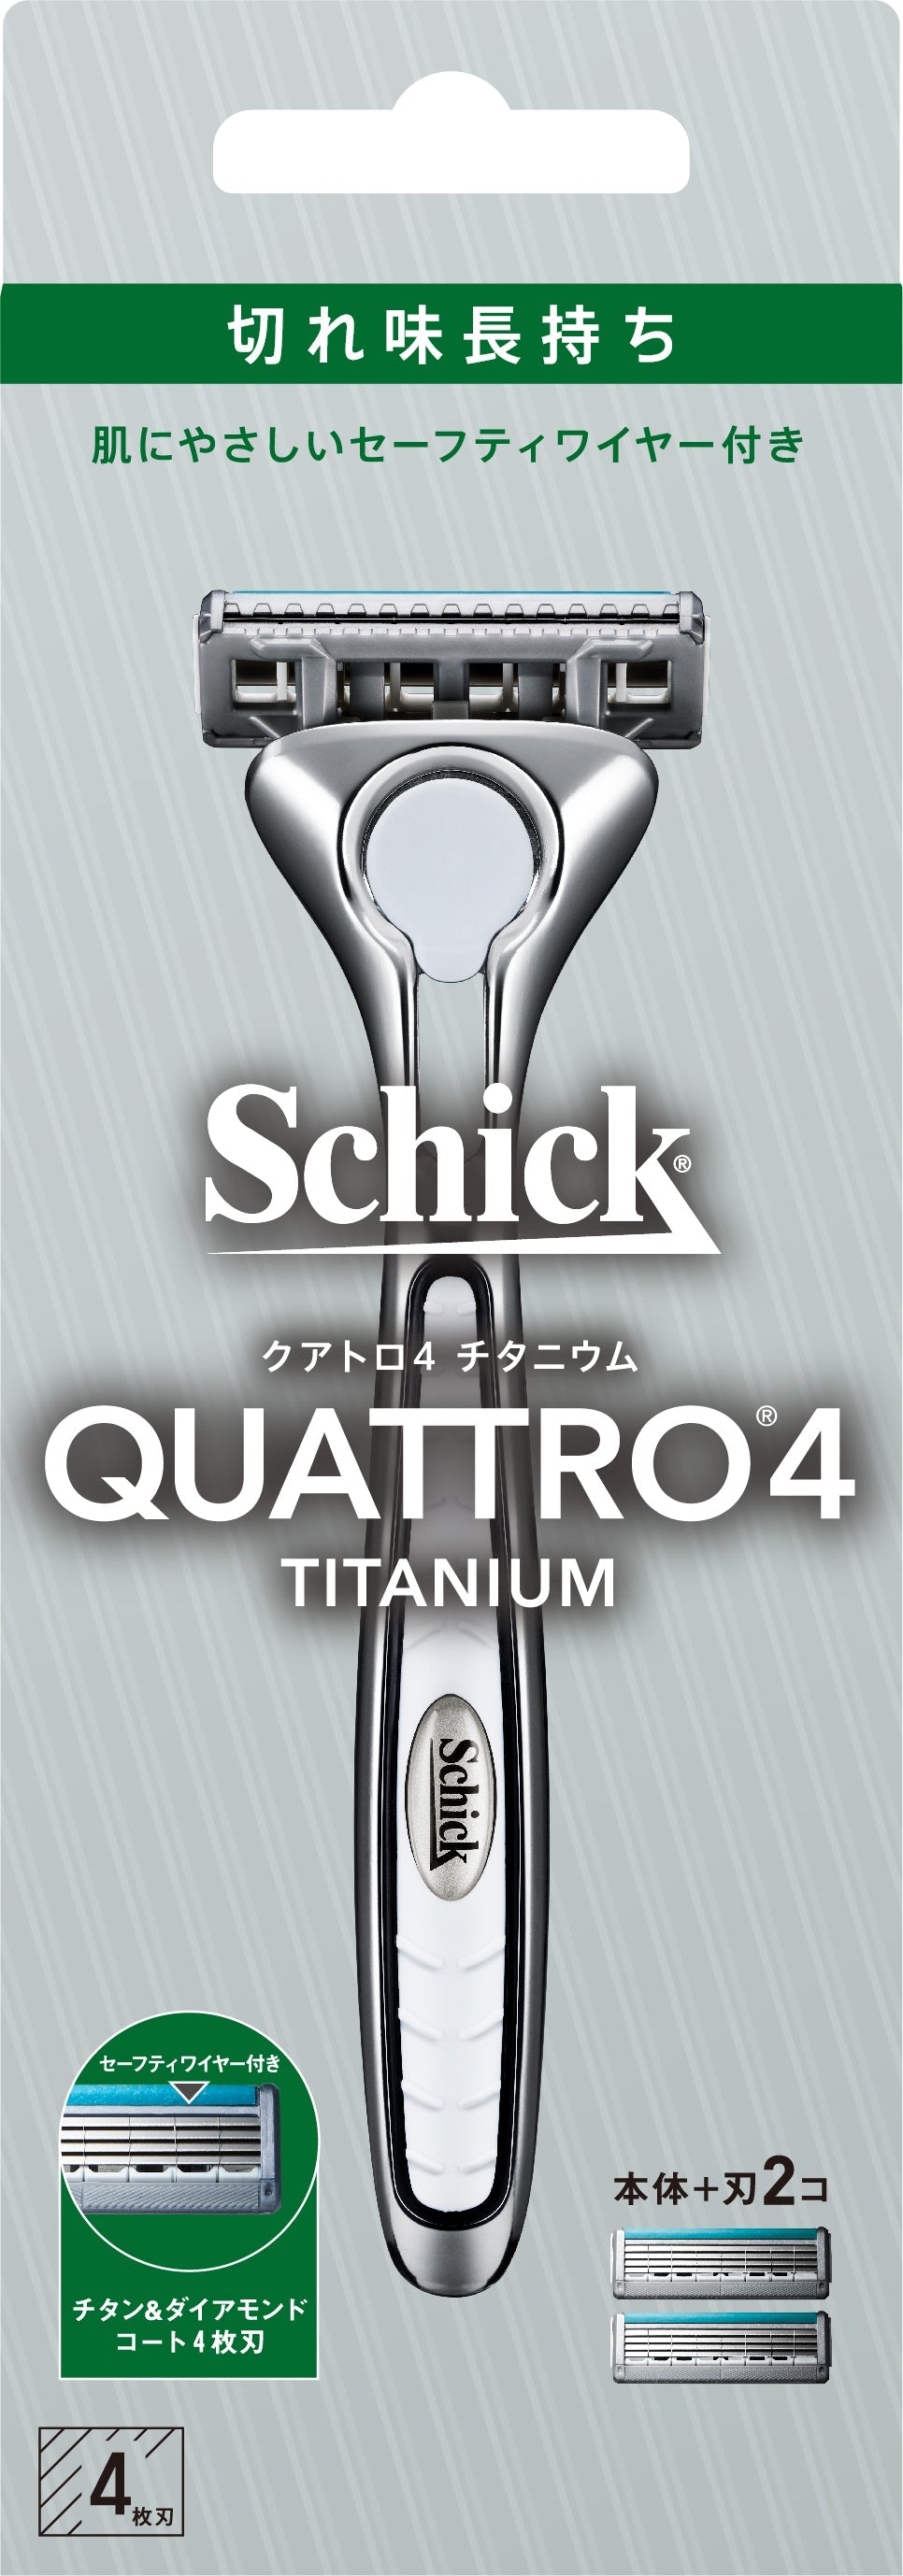 シック Schick クアトロ4 4枚刃 チタニウム ブラックホルダー (替刃2コ